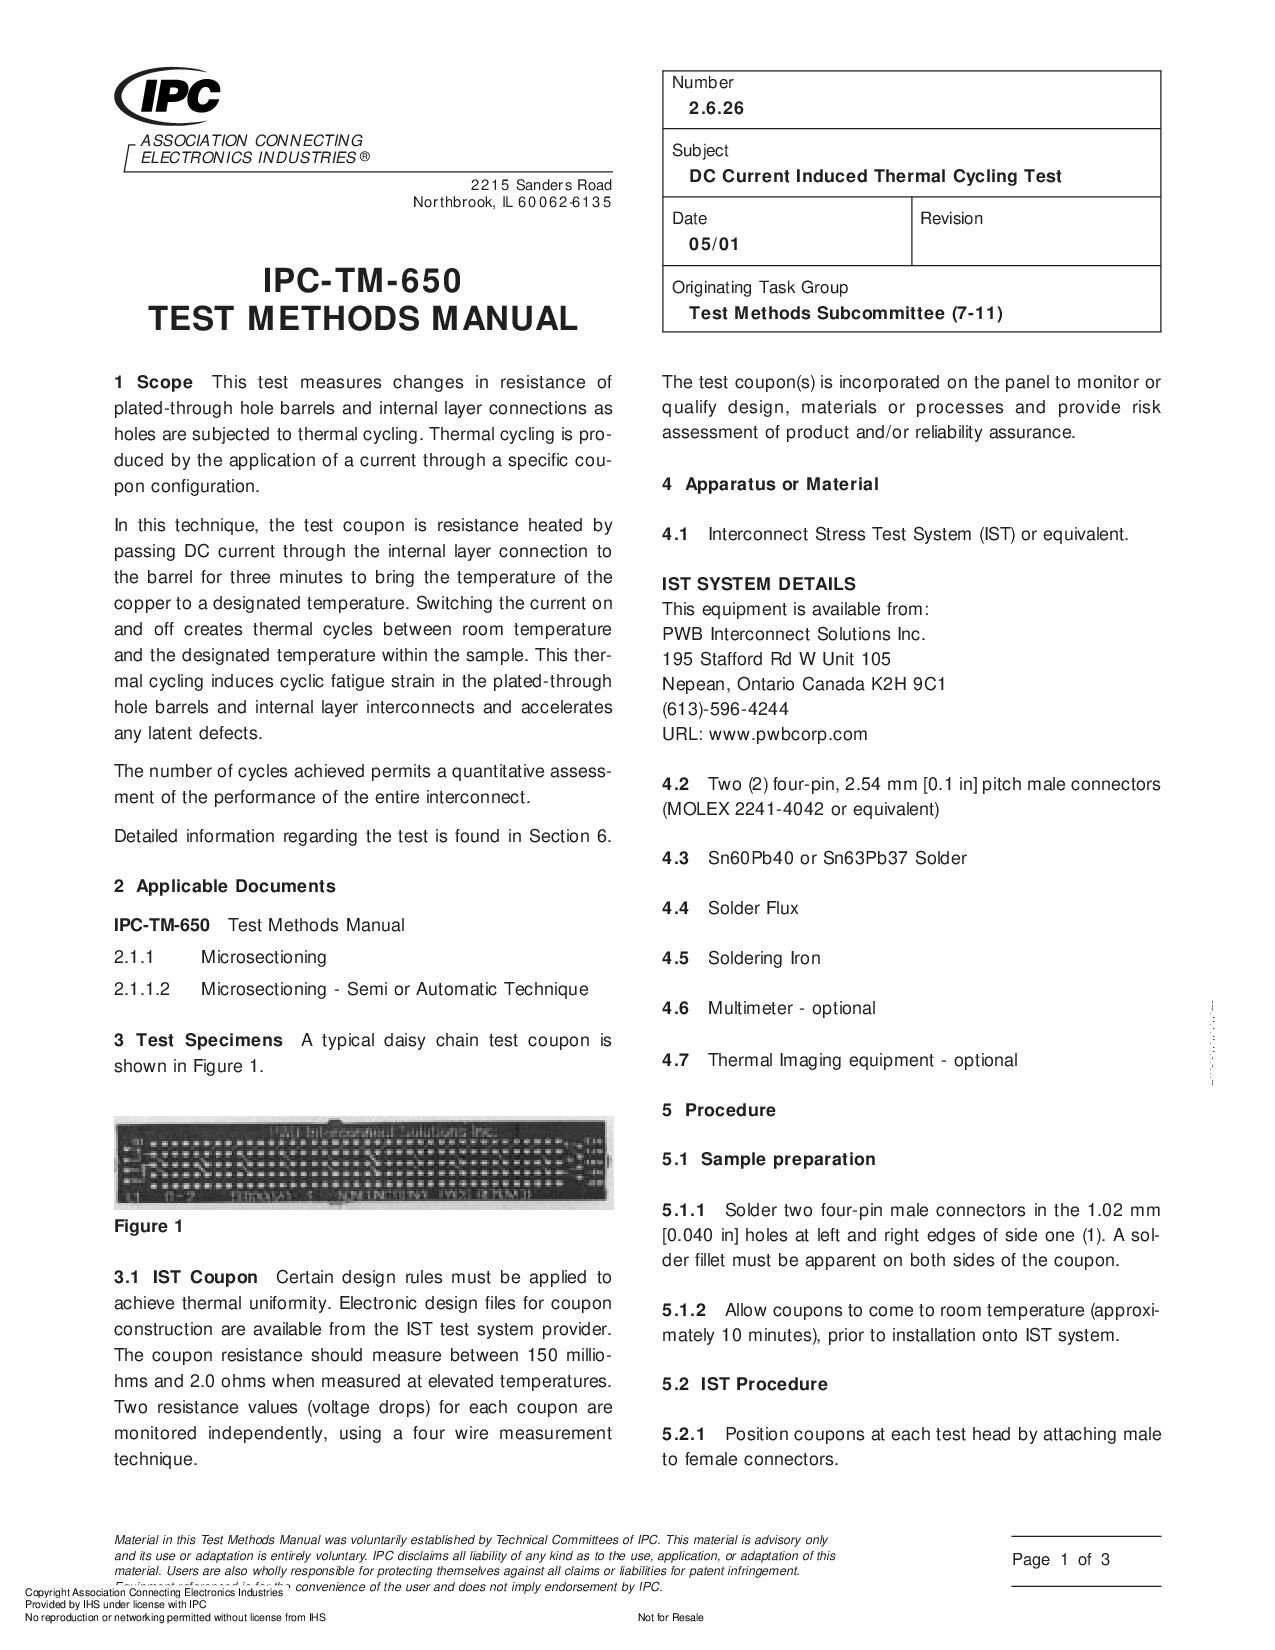 IPC TM-650 2.6.26-2001封面图